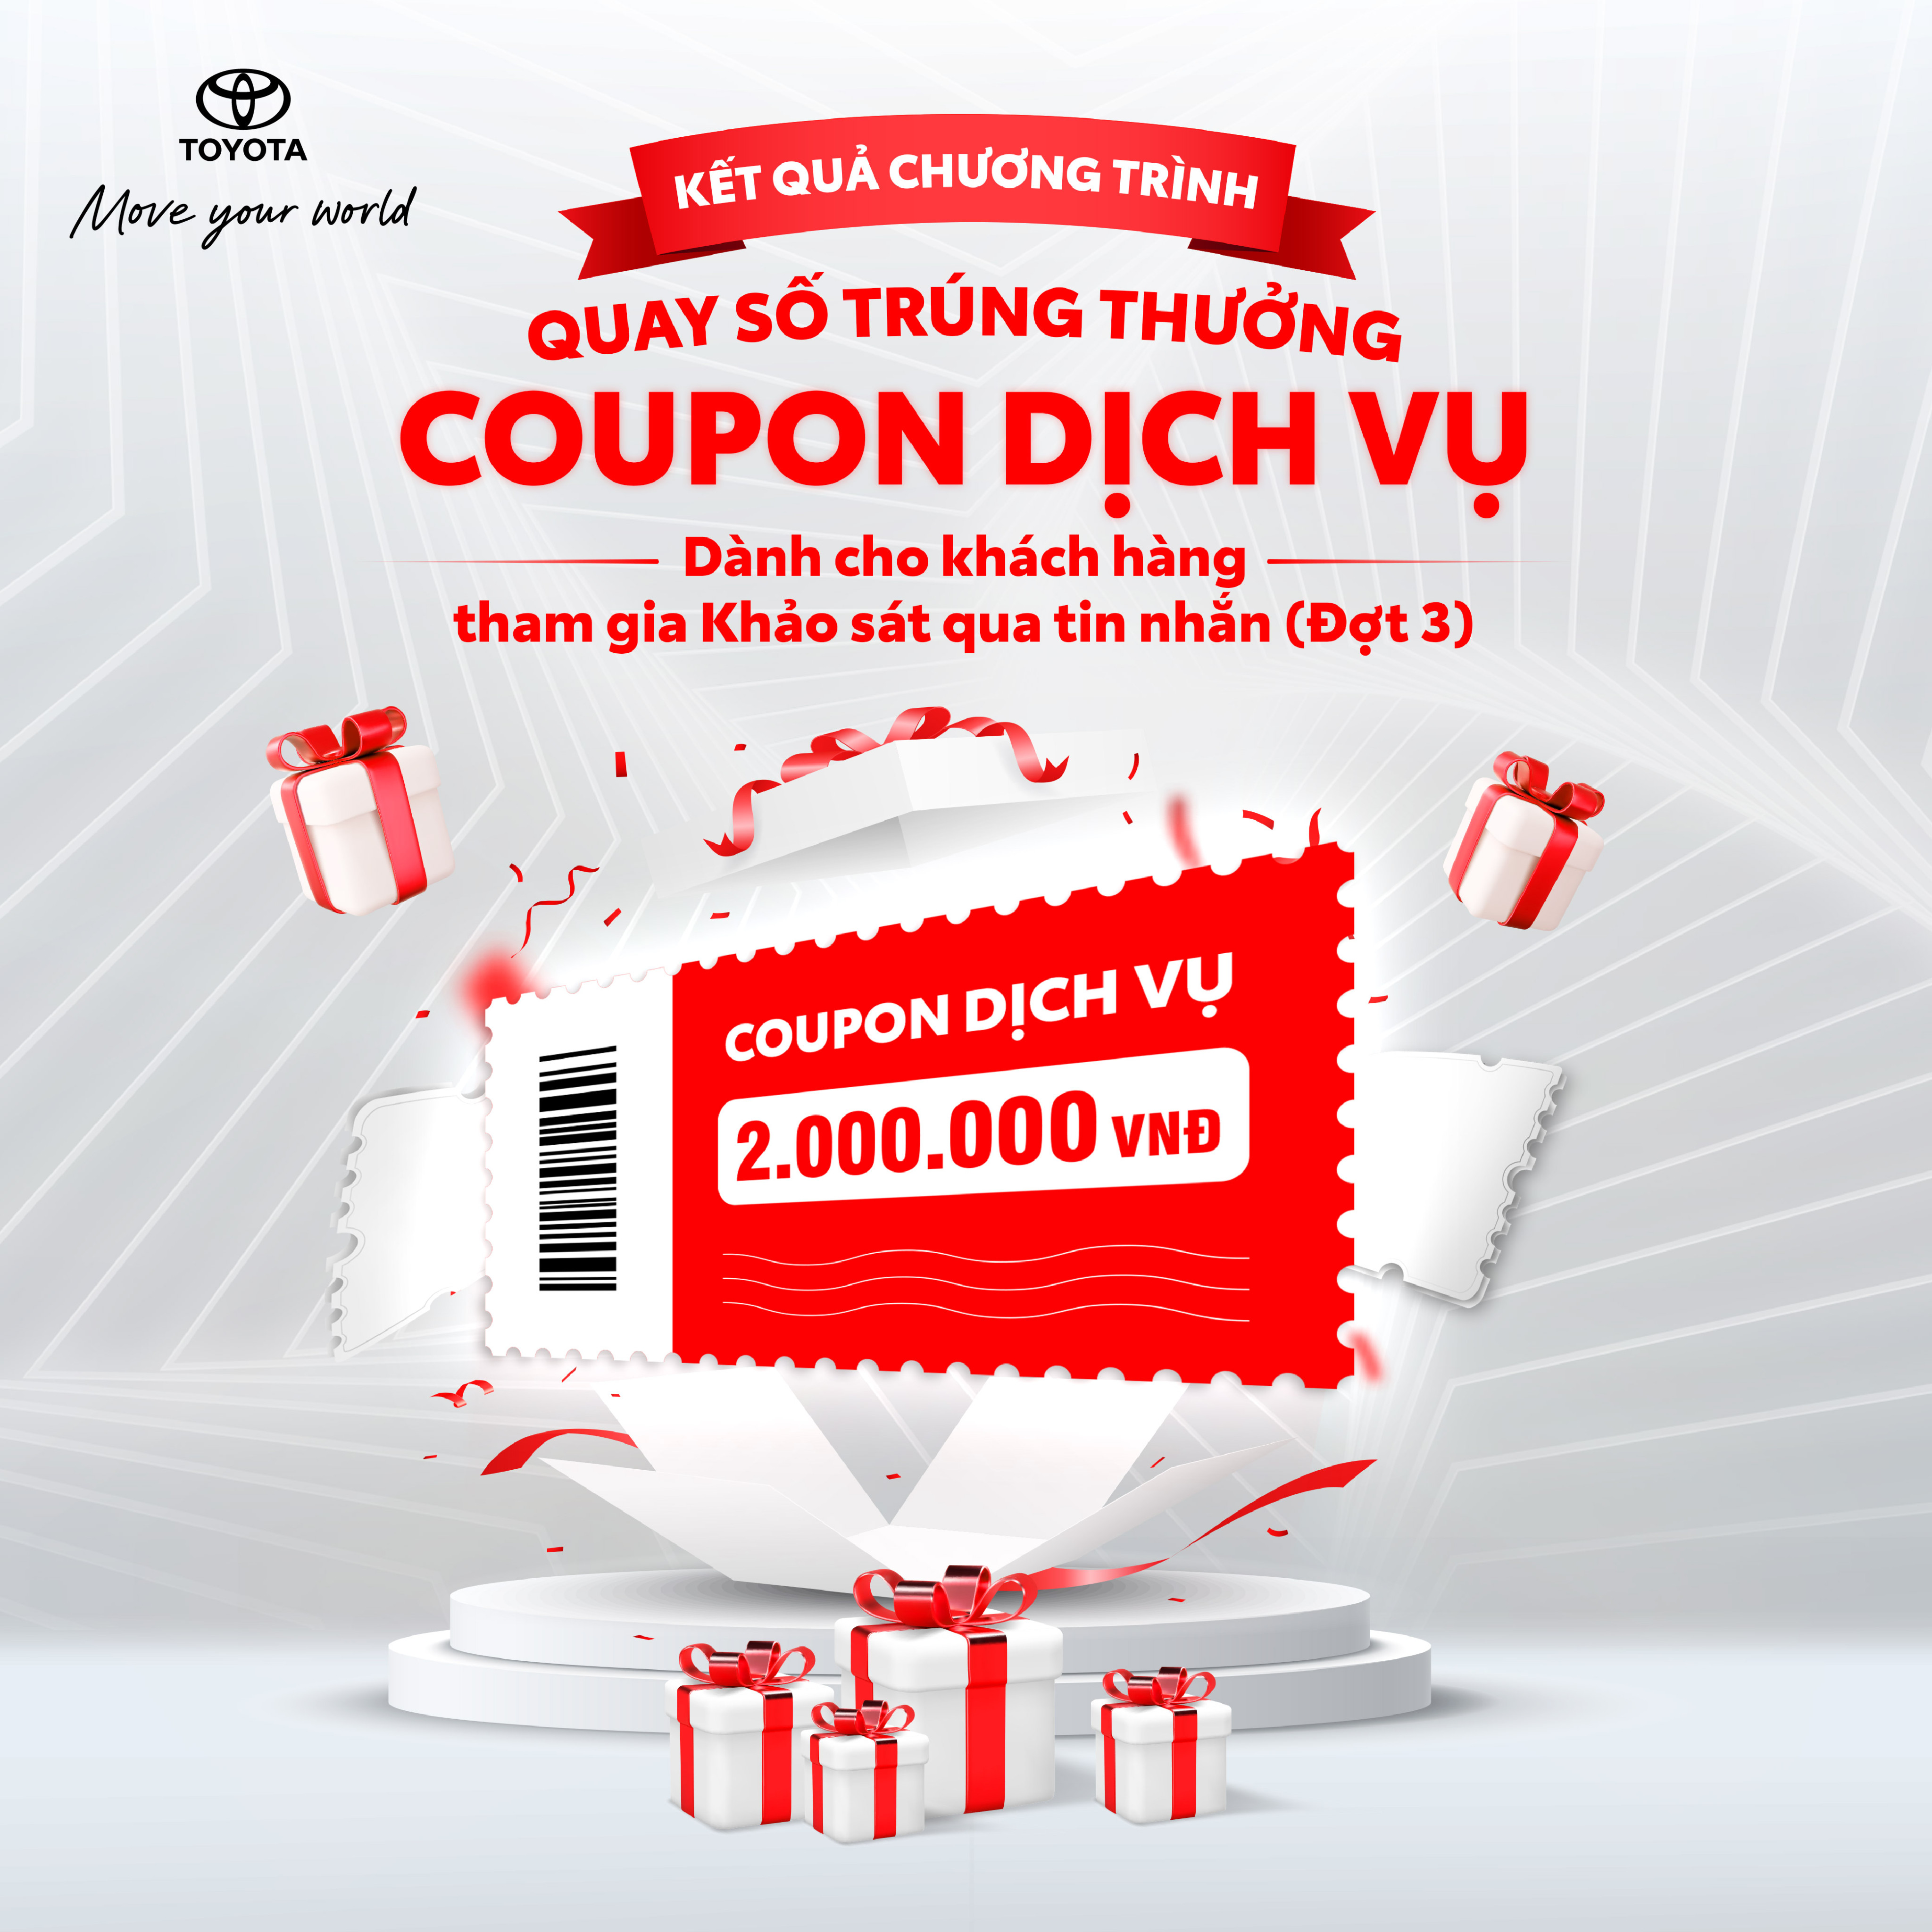 Toyota Việt Nam thông báo kết quả quay số trúng thưởng coupon dịch vụ cho khách hàng làm khảo sát qua tin nhắn đợt 3